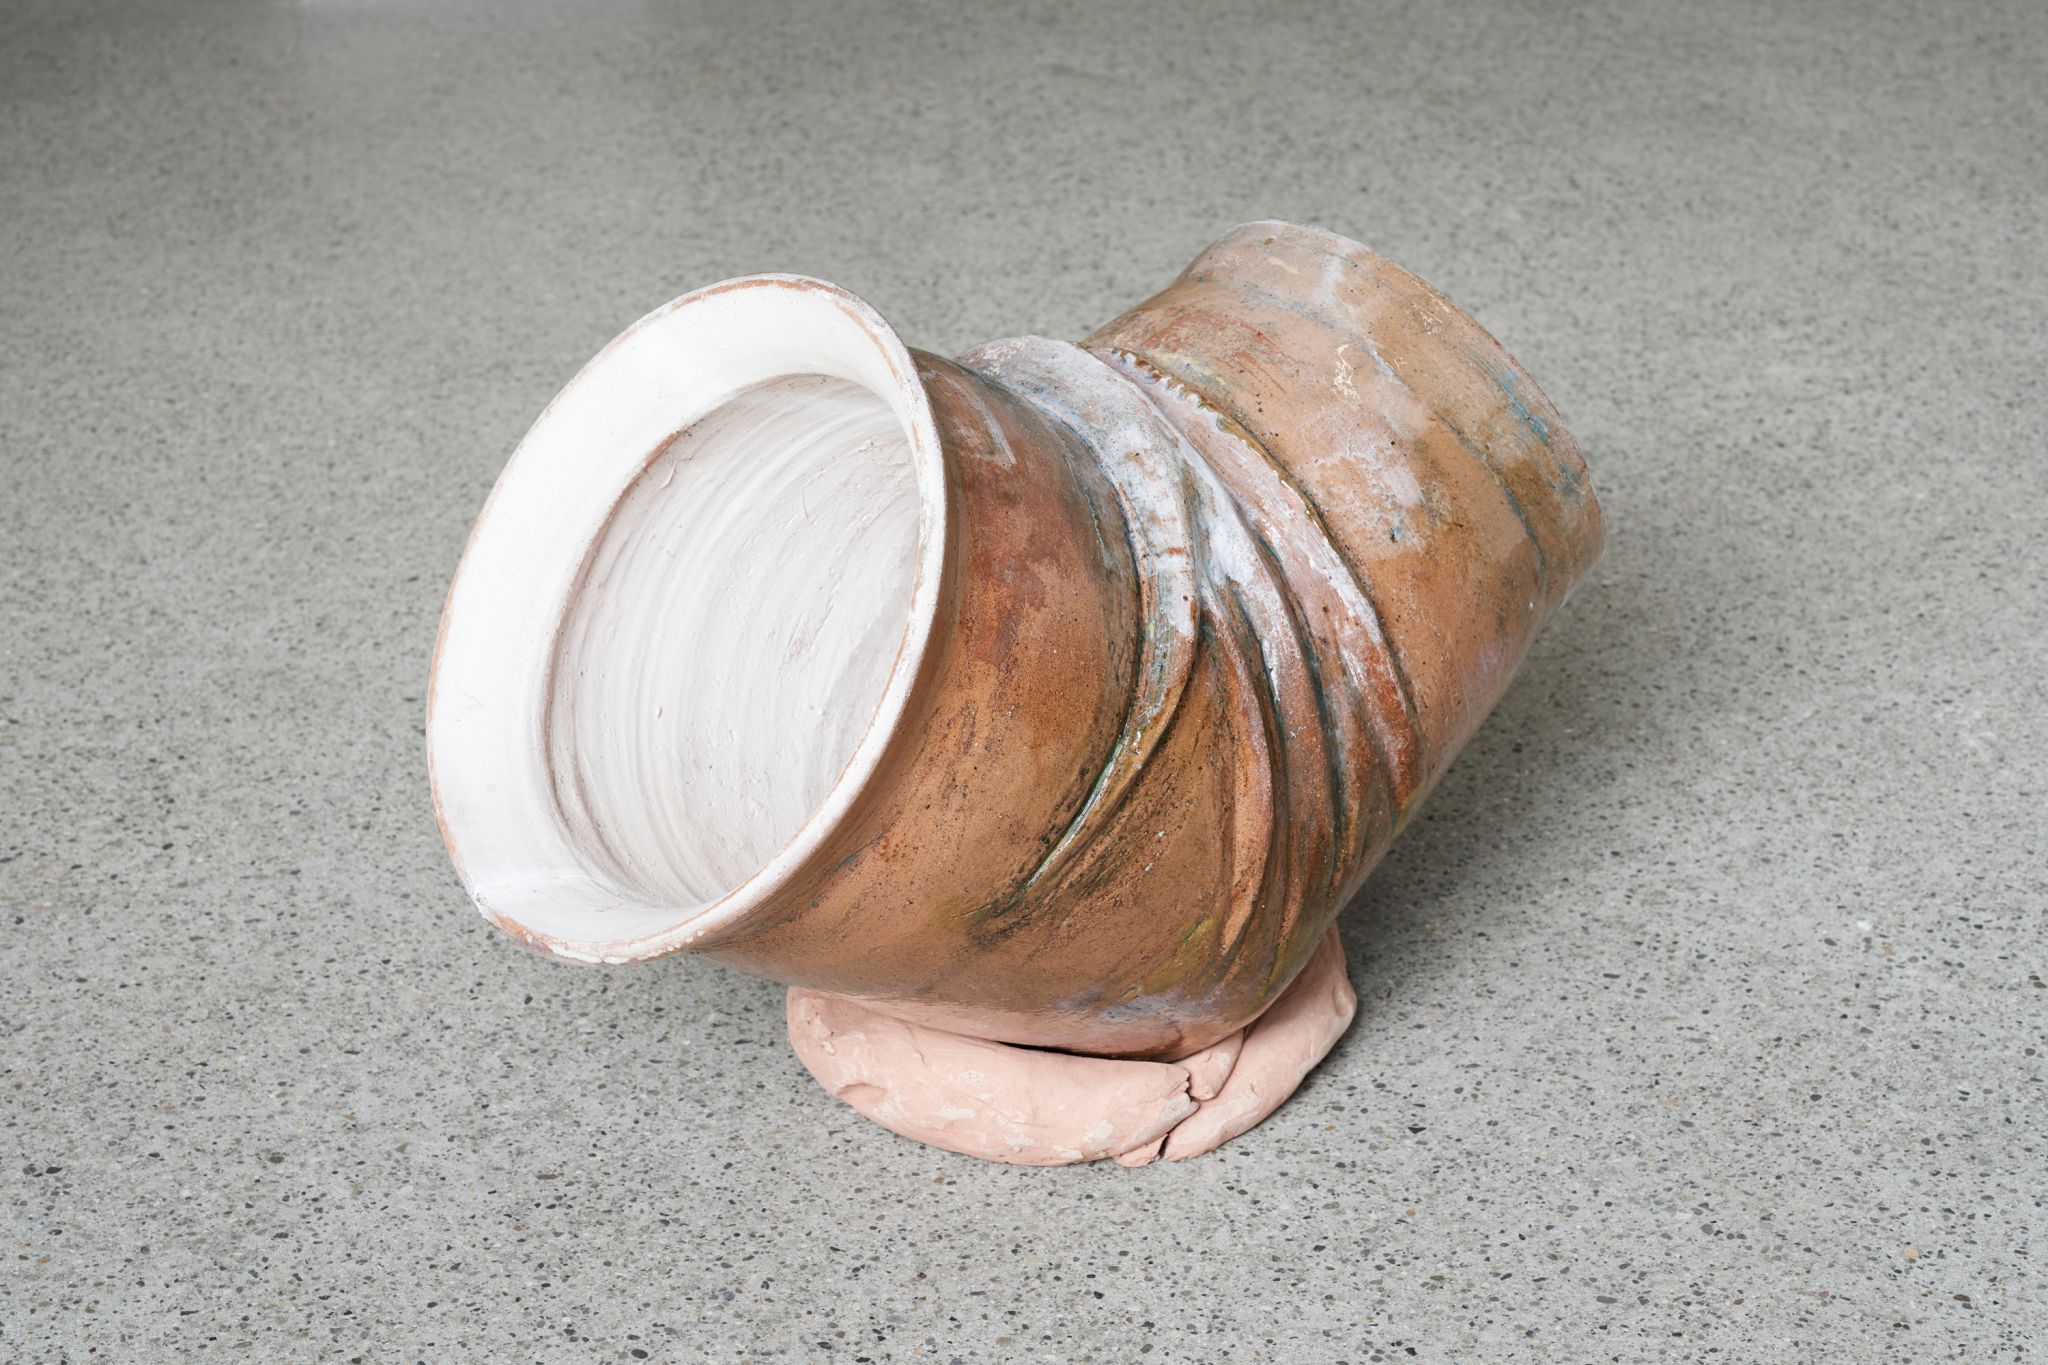 Jumana Manna, Extra, 2021, Ceramics, 50 ⁠× ⁠60 ⁠× ⁠40 ⁠cm, 19 ¾ ⁠× ⁠23 ½ ⁠× ⁠15 ¾ inches